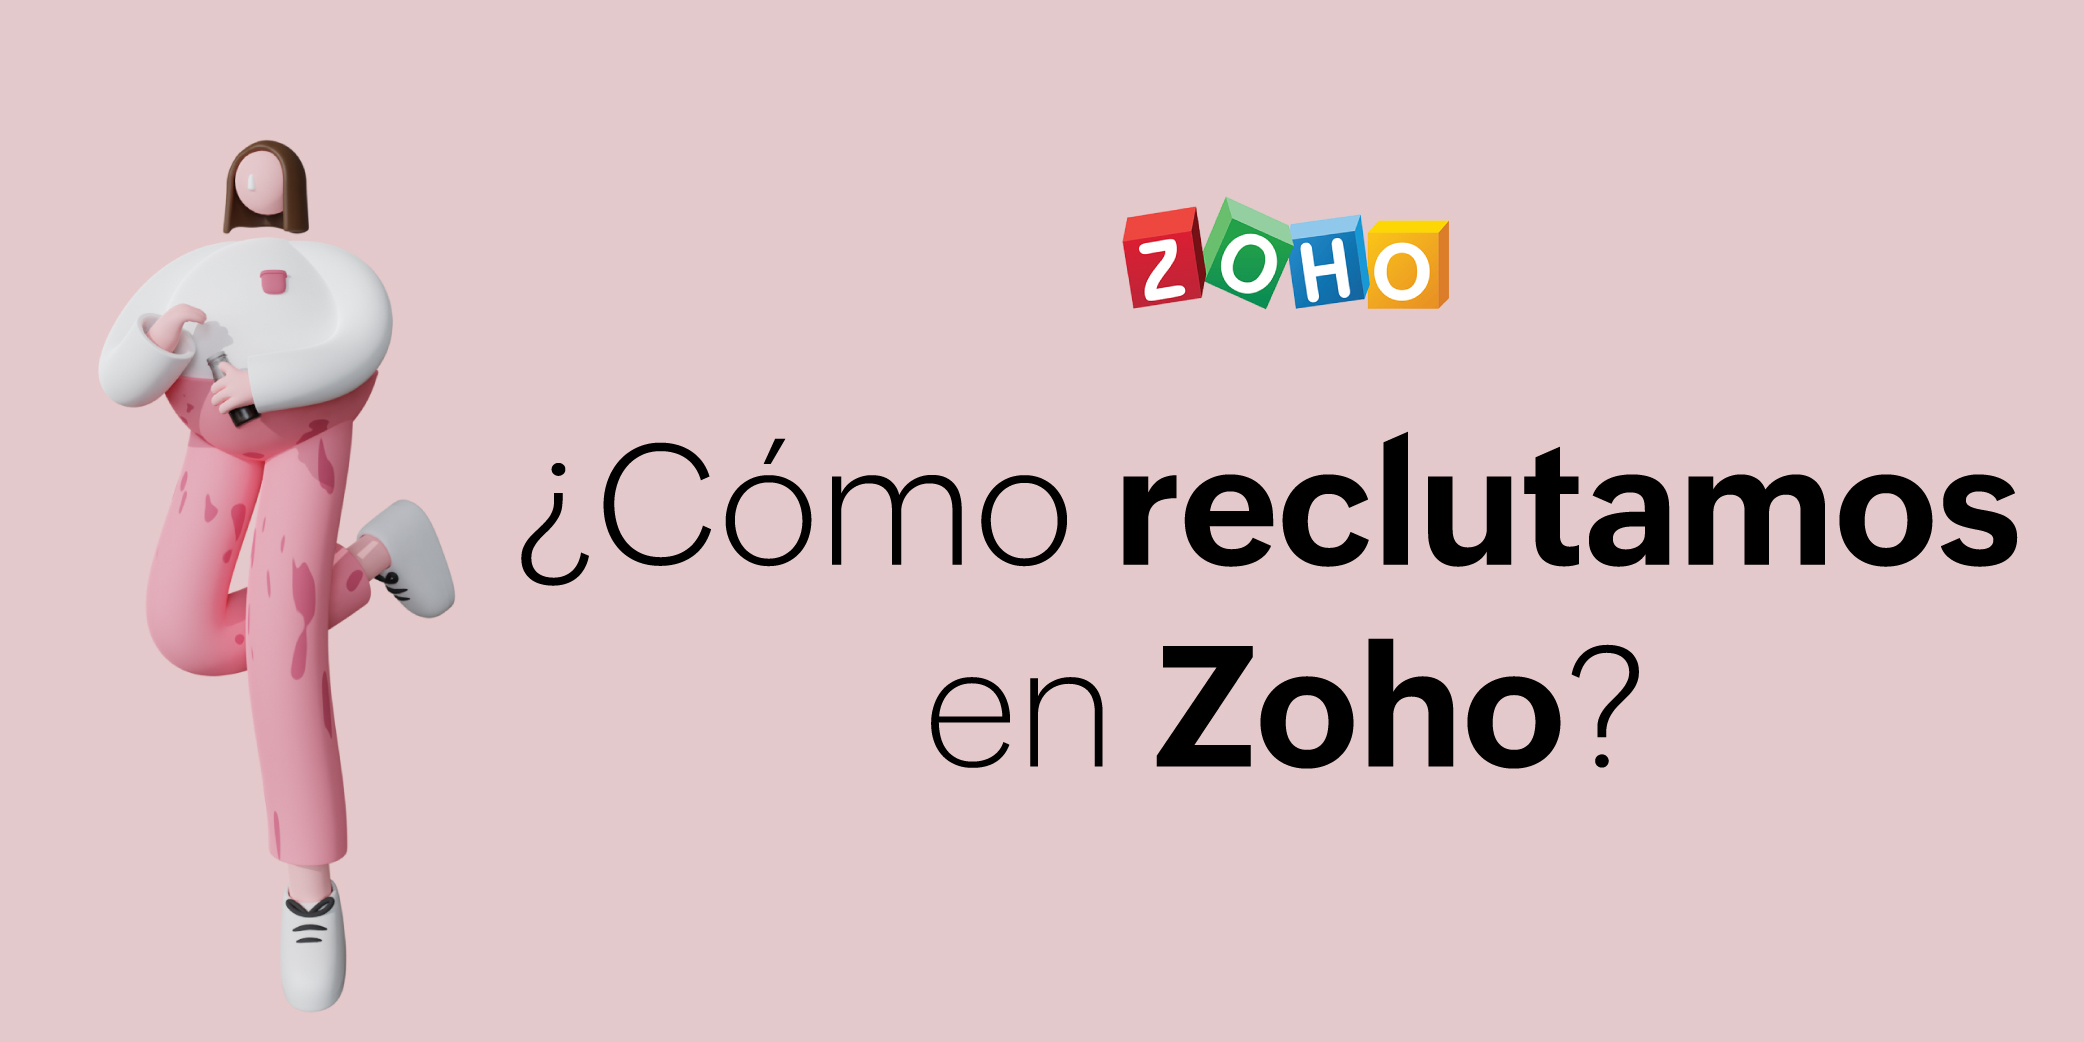 ¿Cómo reclutamos en Zoho? Credenciales vs educación basada en la experiencia